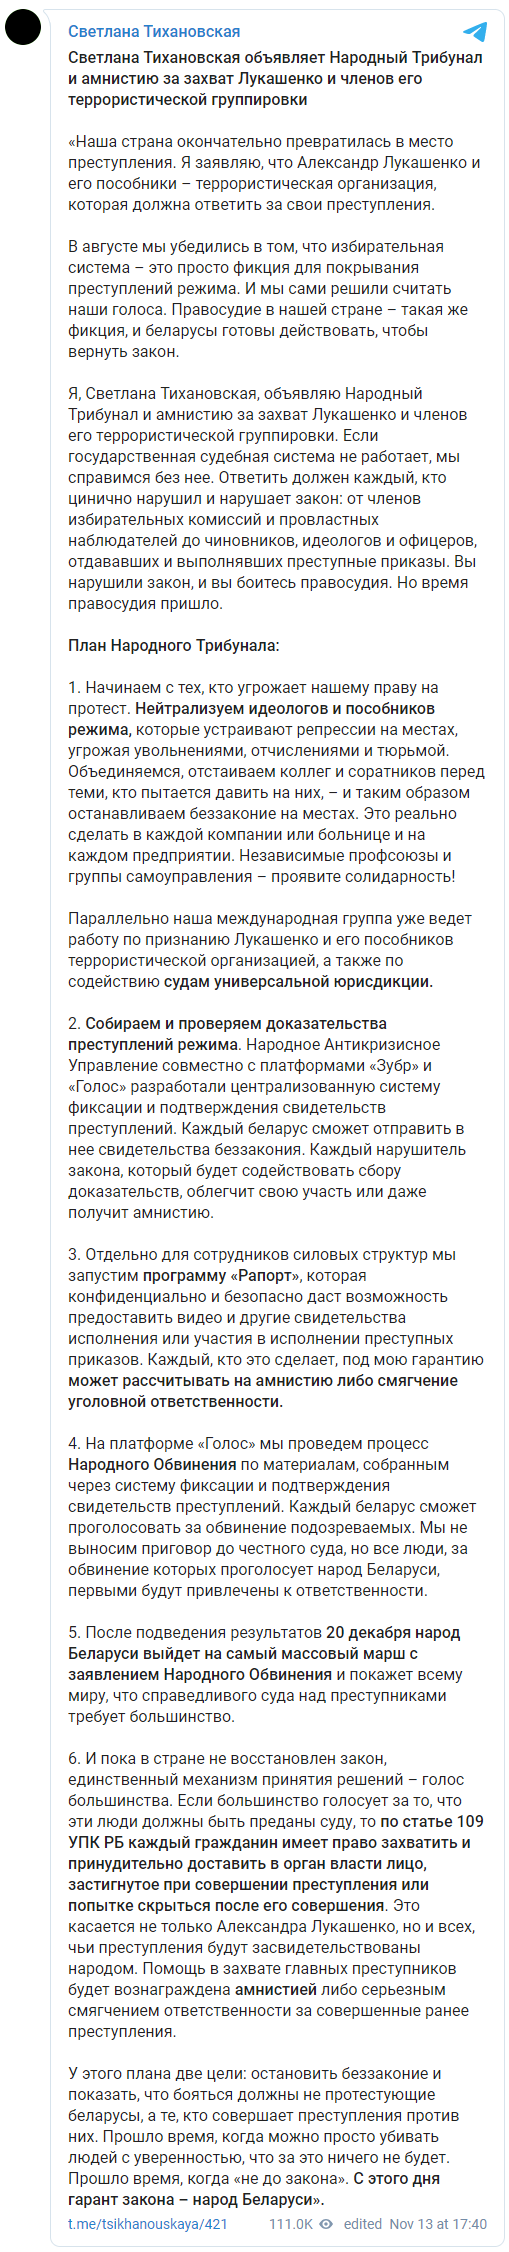 Тихановская пообещала амнистию силовикам, которые захватят Лукашенко и объявила о создании Народного трибунала. Скриншот: Тихановская в Телеграм